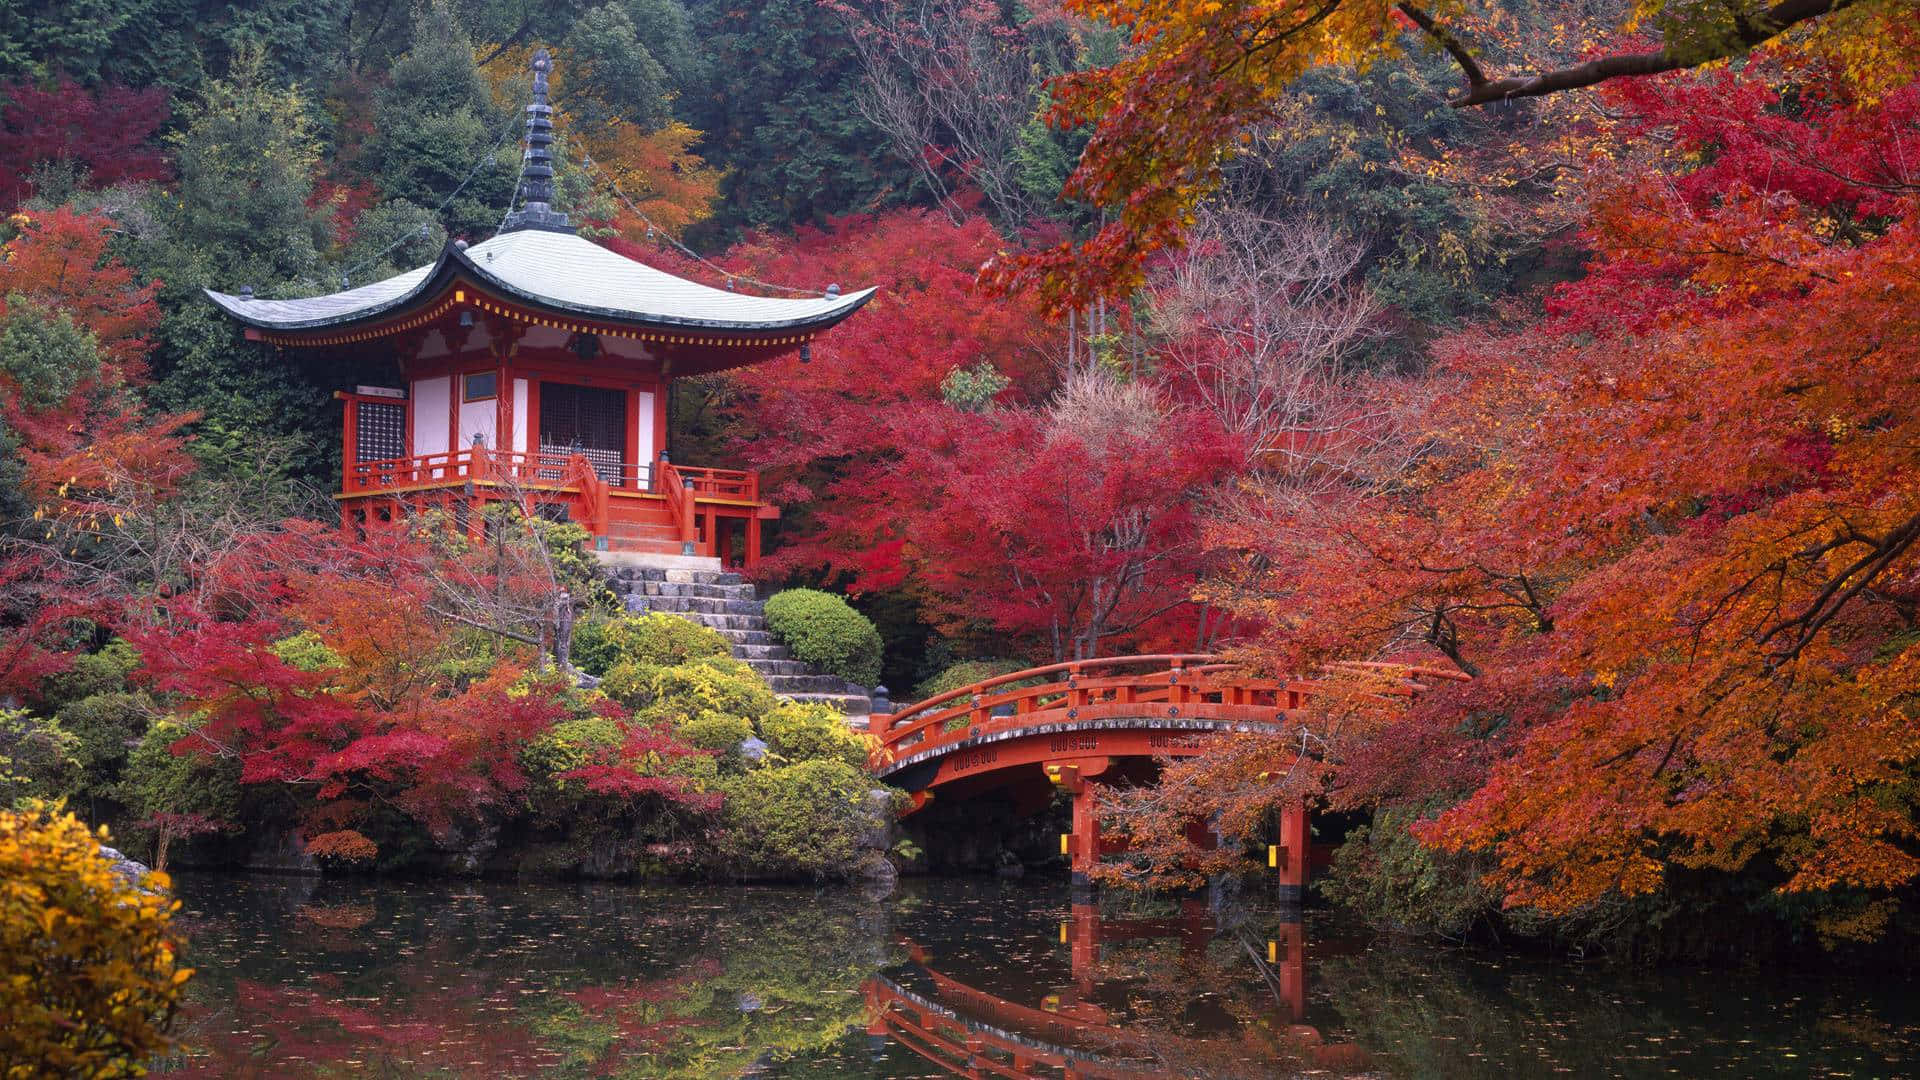 Unailustración Vibrante De Japón, Llena De Colores Impresionantes Y Carácter.